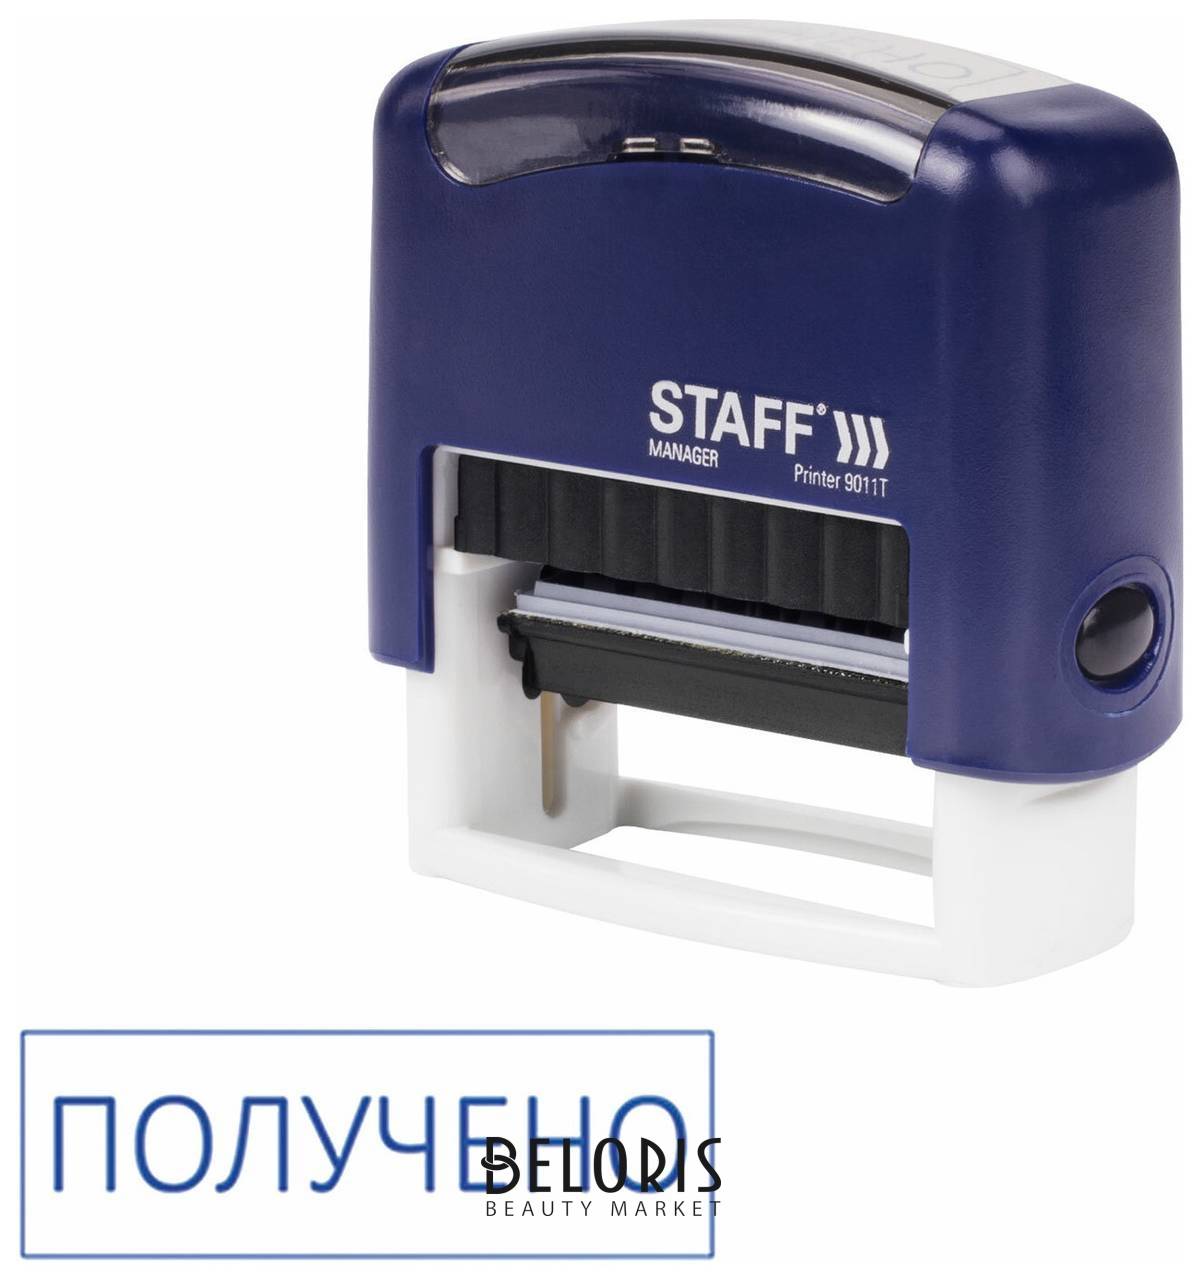 Штамп стандартный Staff Получено, оттиск 38х14 мм,printer 9011t, 237422 Staff